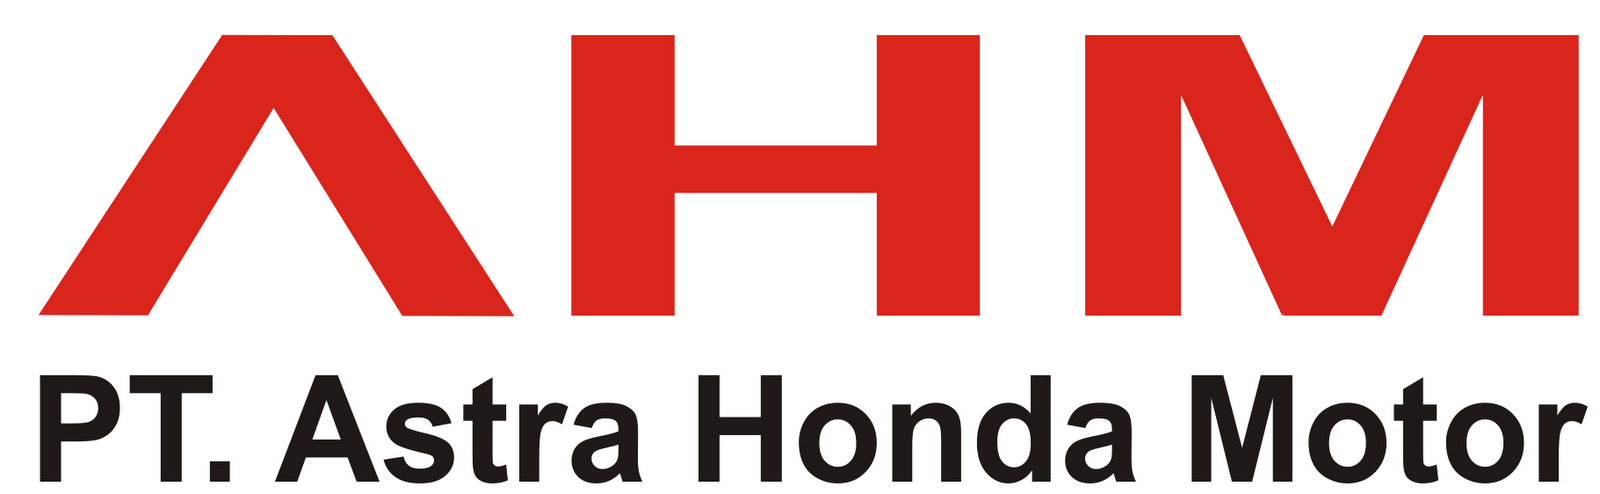 Lowongan Kerja PT Astra Honda Motor Mei 2014 - Kumpulan Terbaru 2019